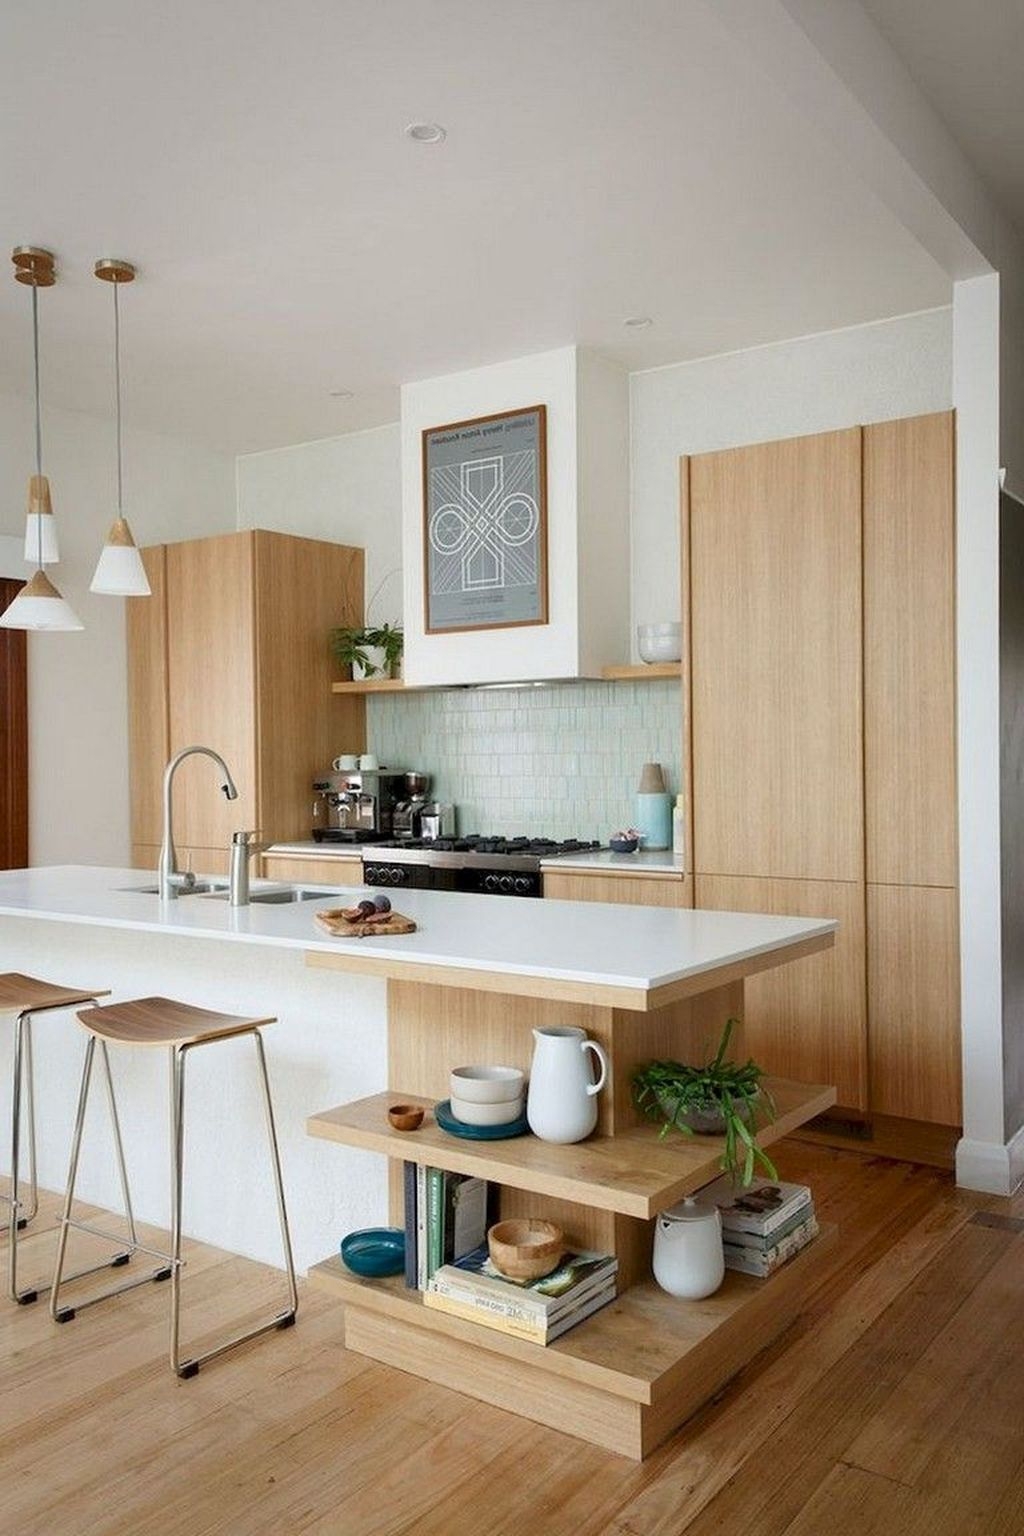 Stunning Modern Kitchen Design Ideas 24 - HOMYHOMEE